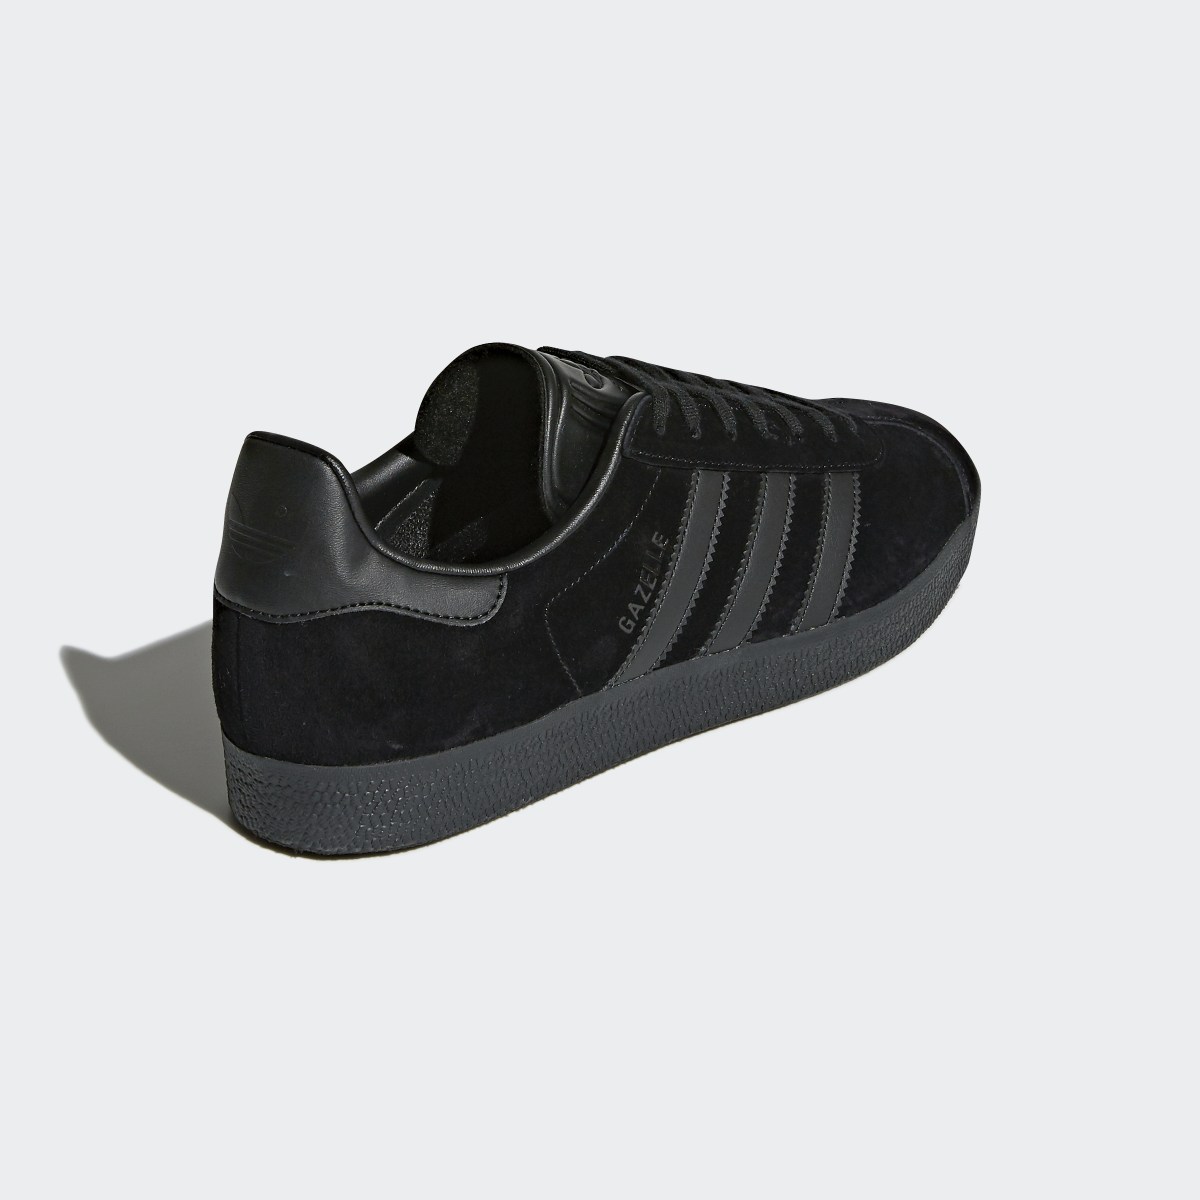 Adidas Gazelle Shoes. 7